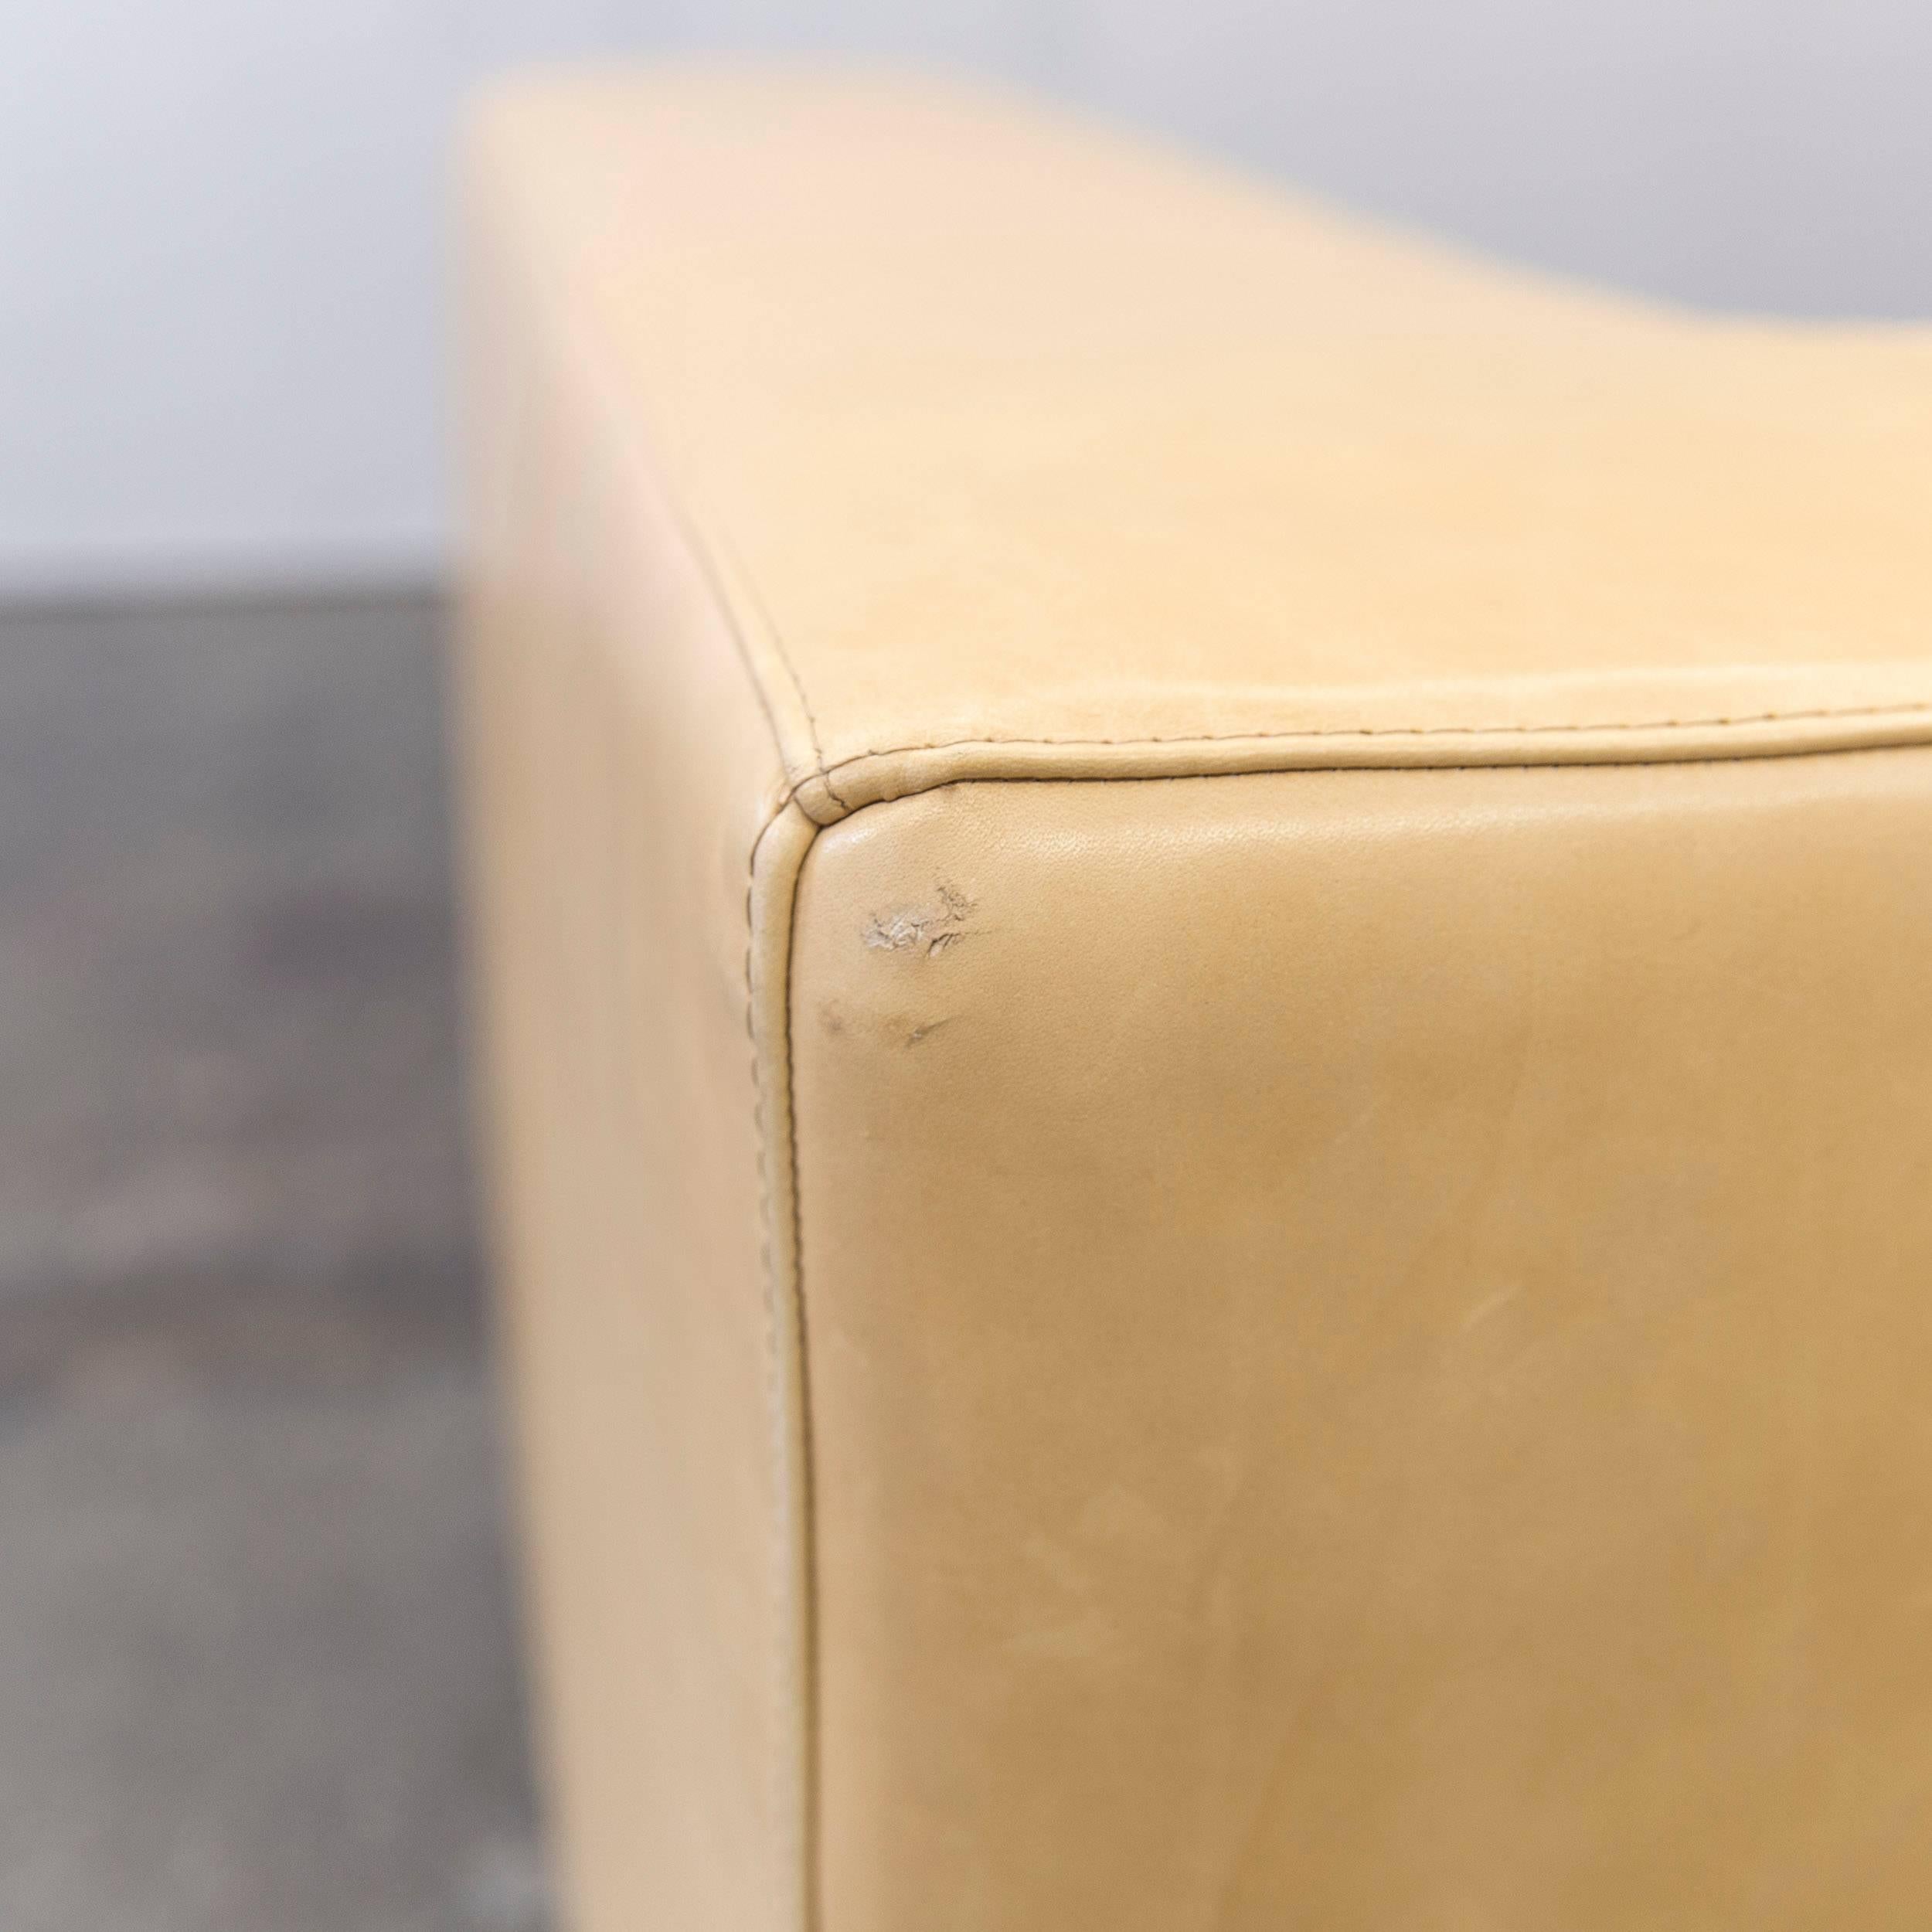 Machalke Designer Sofa Leather Crème Beige Three-Seat Couch Modern 2